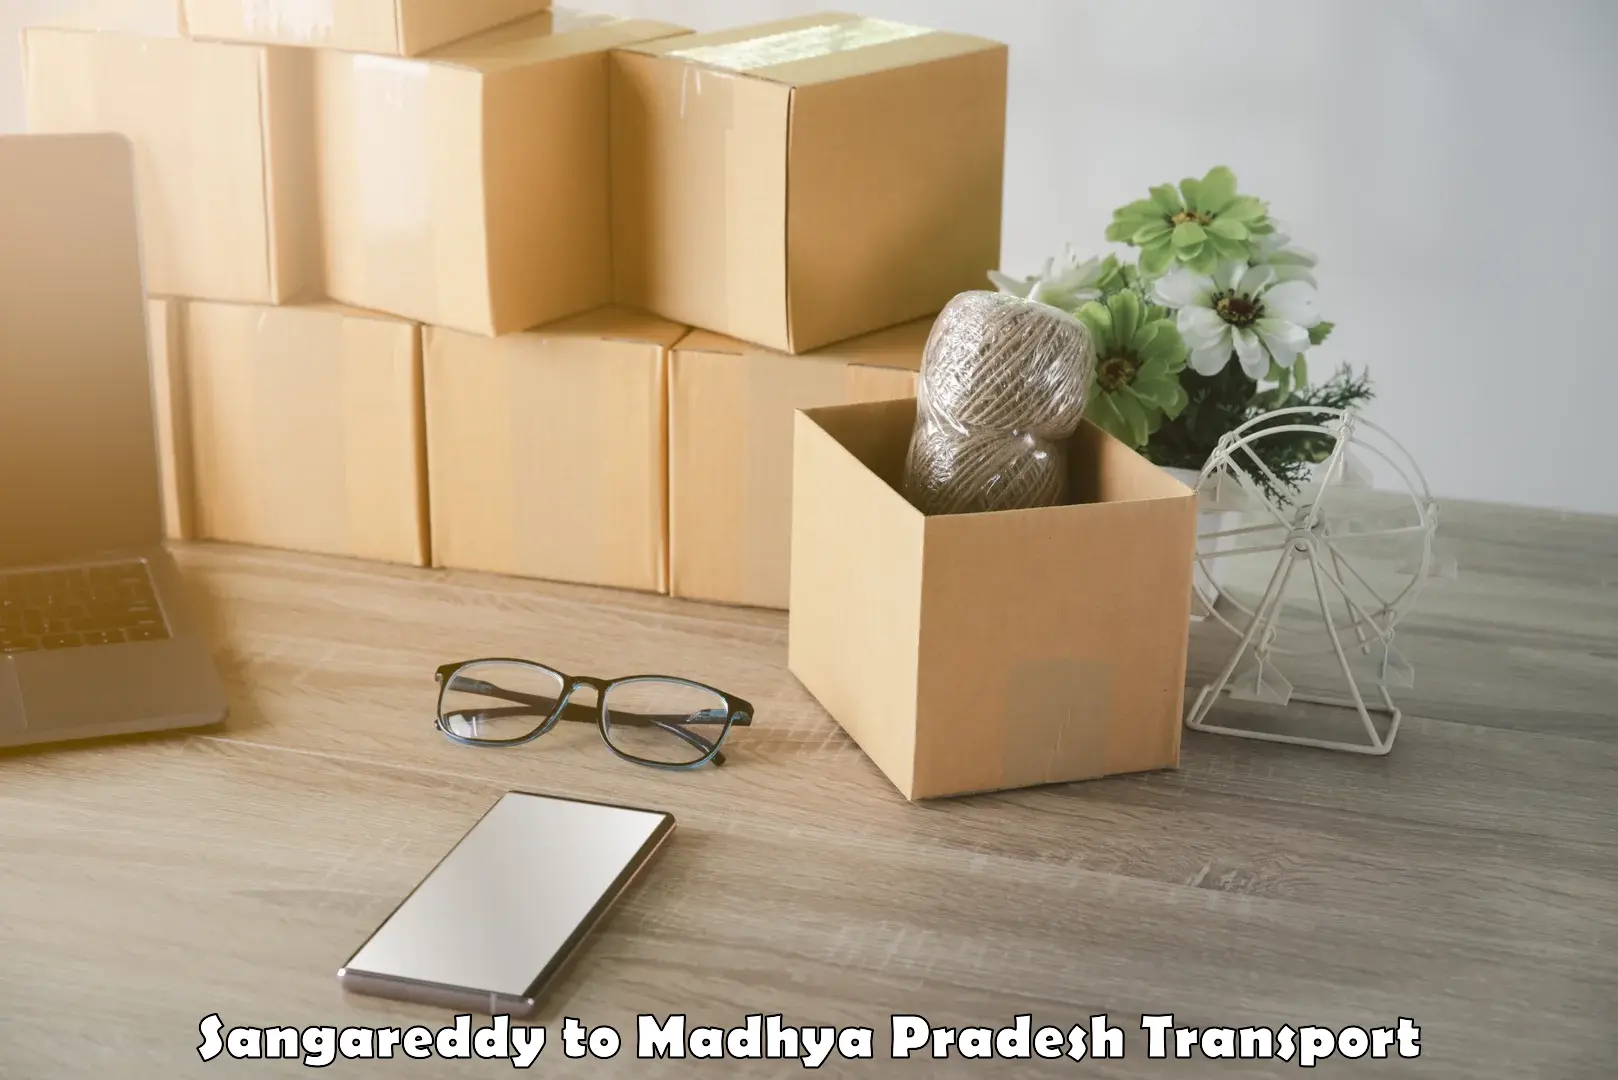 Delivery service Sangareddy to Amarwara